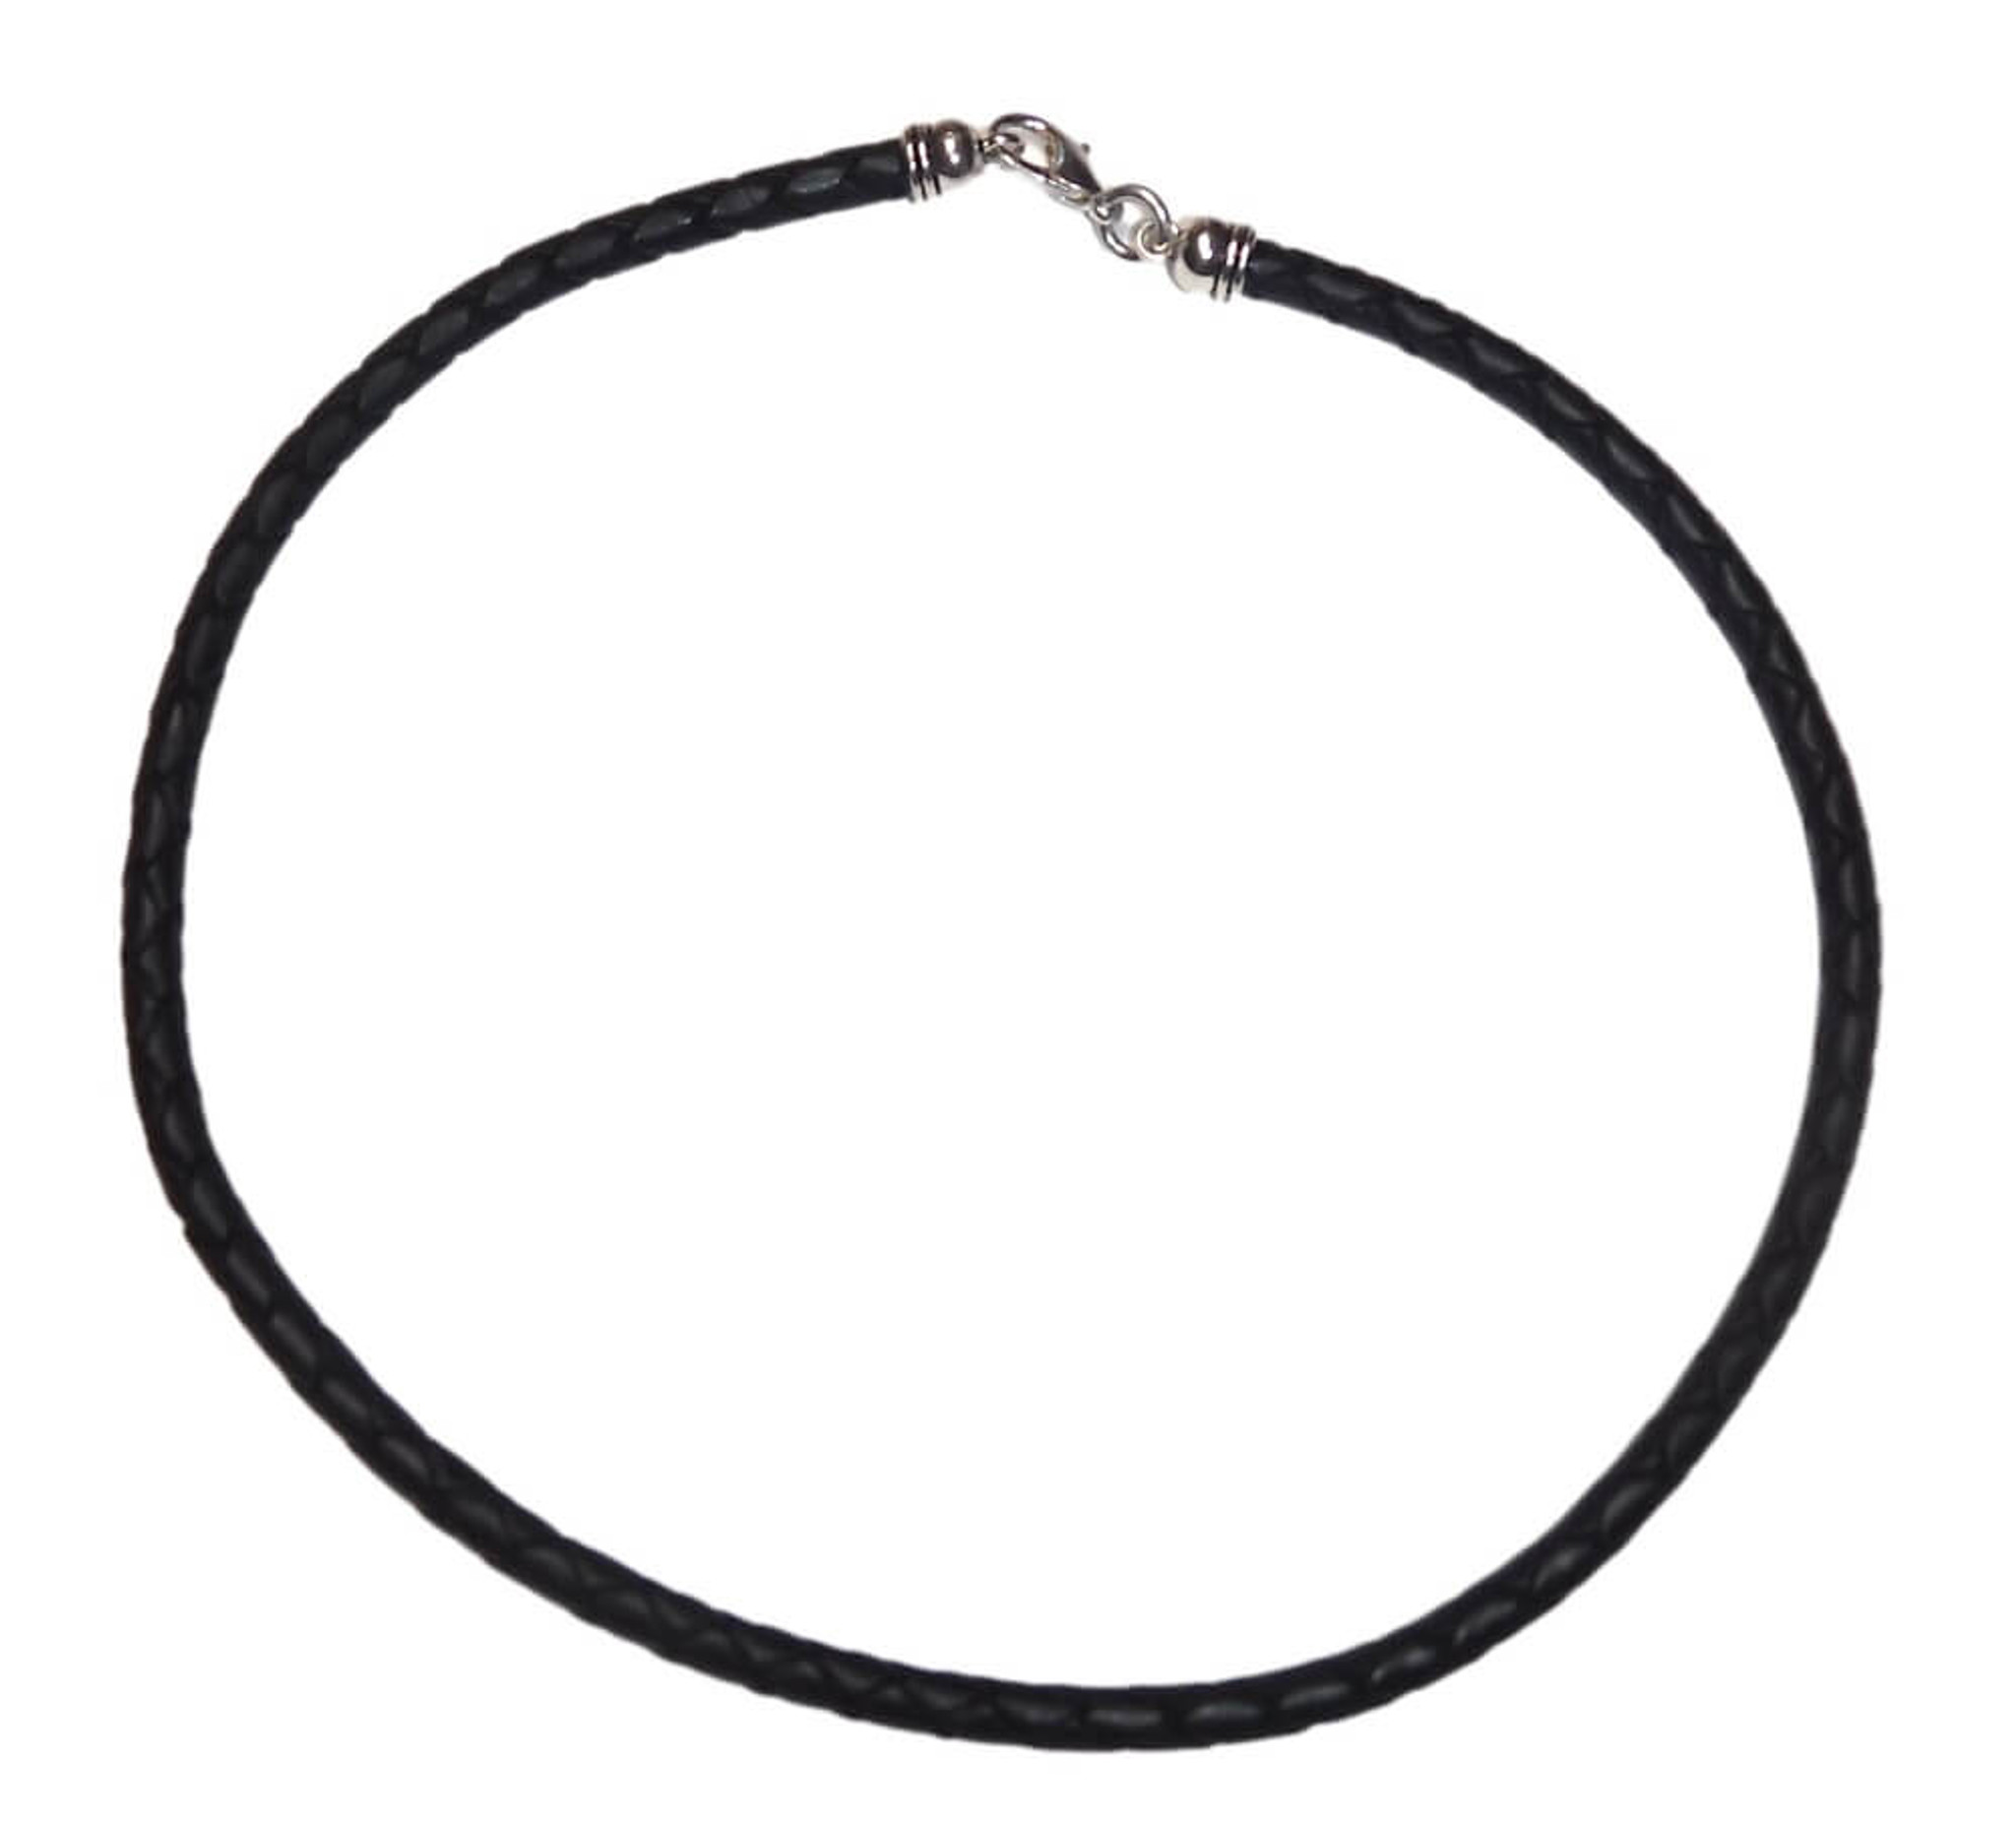 Black Thread Necklace